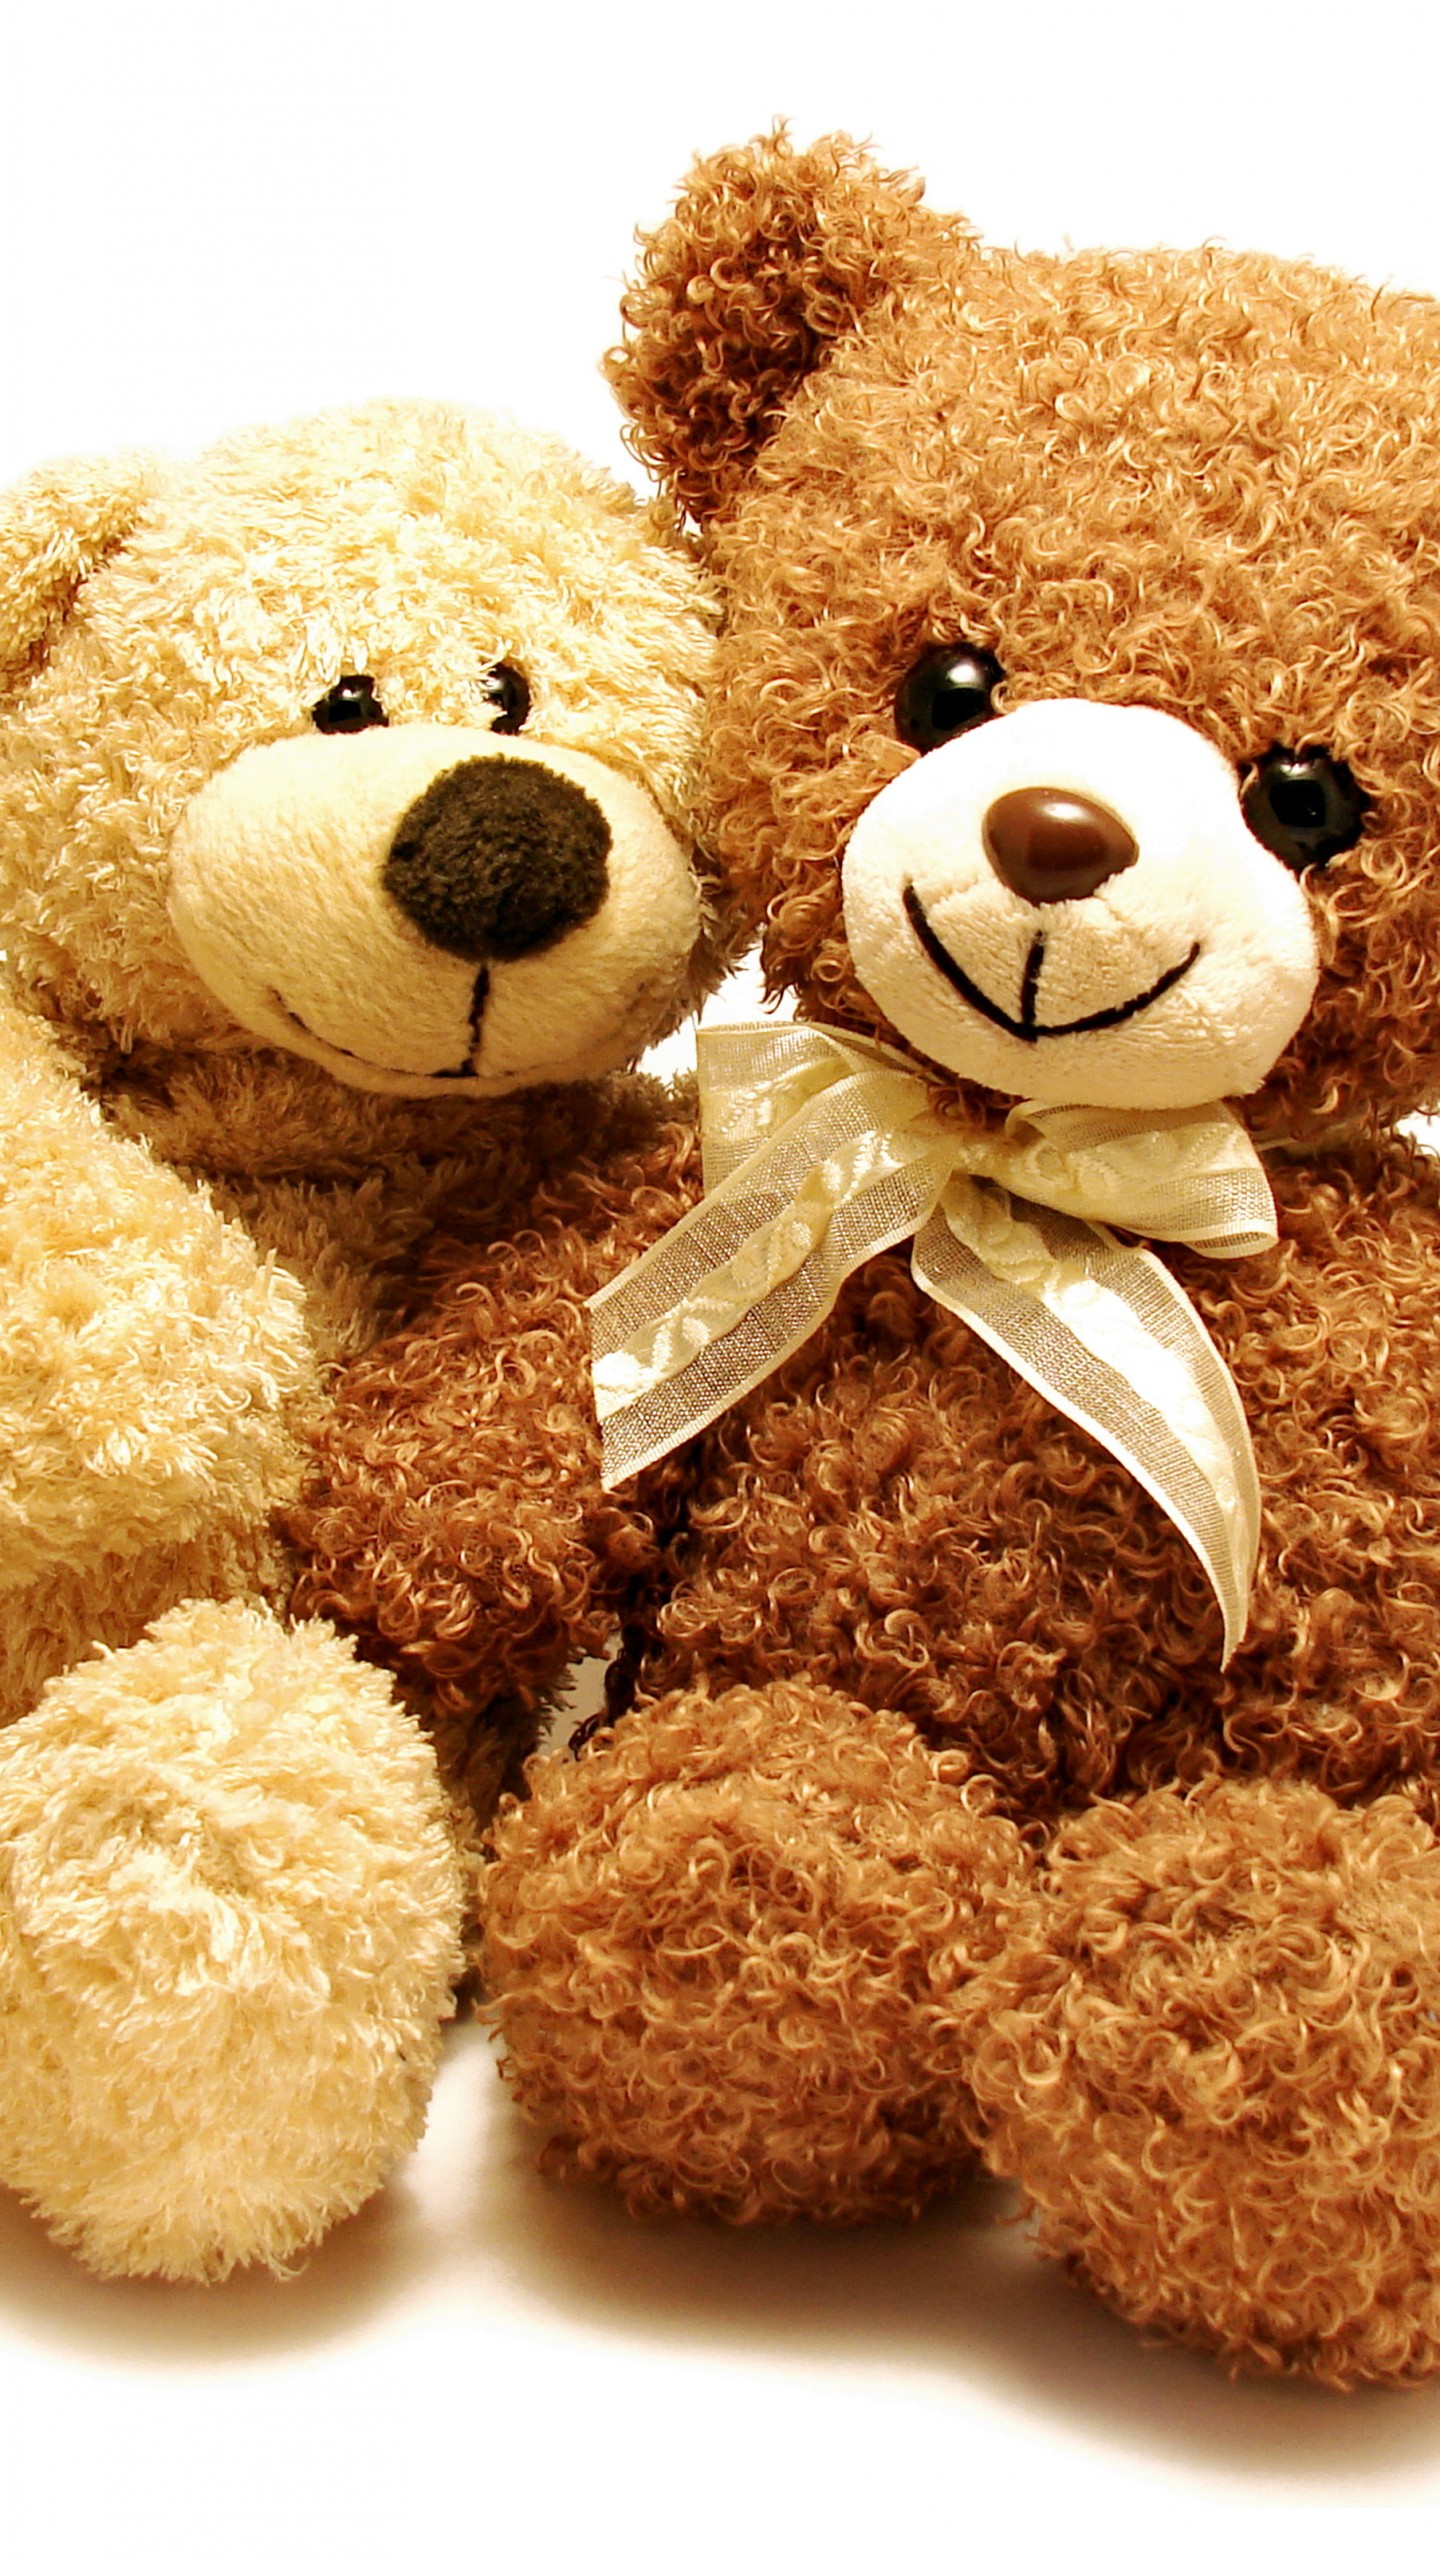 teddy bear wallpaper,stuffed toy,teddy bear,toy,plush,bear